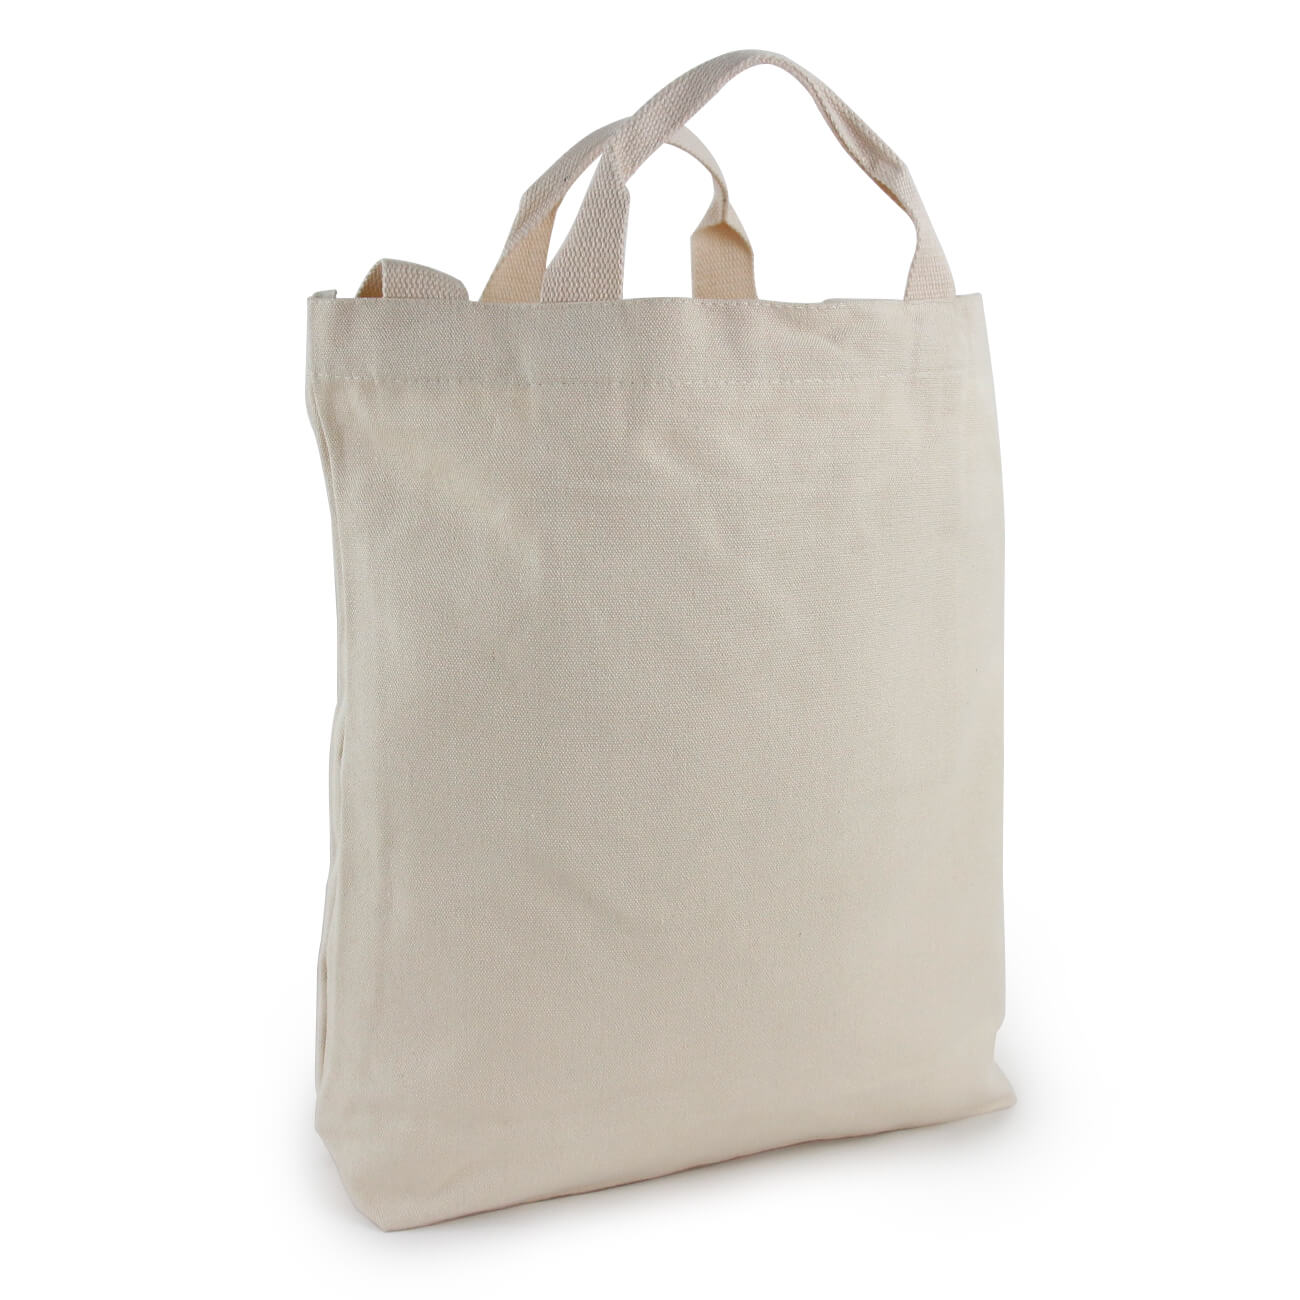 Organic cotton reusable shopping bags